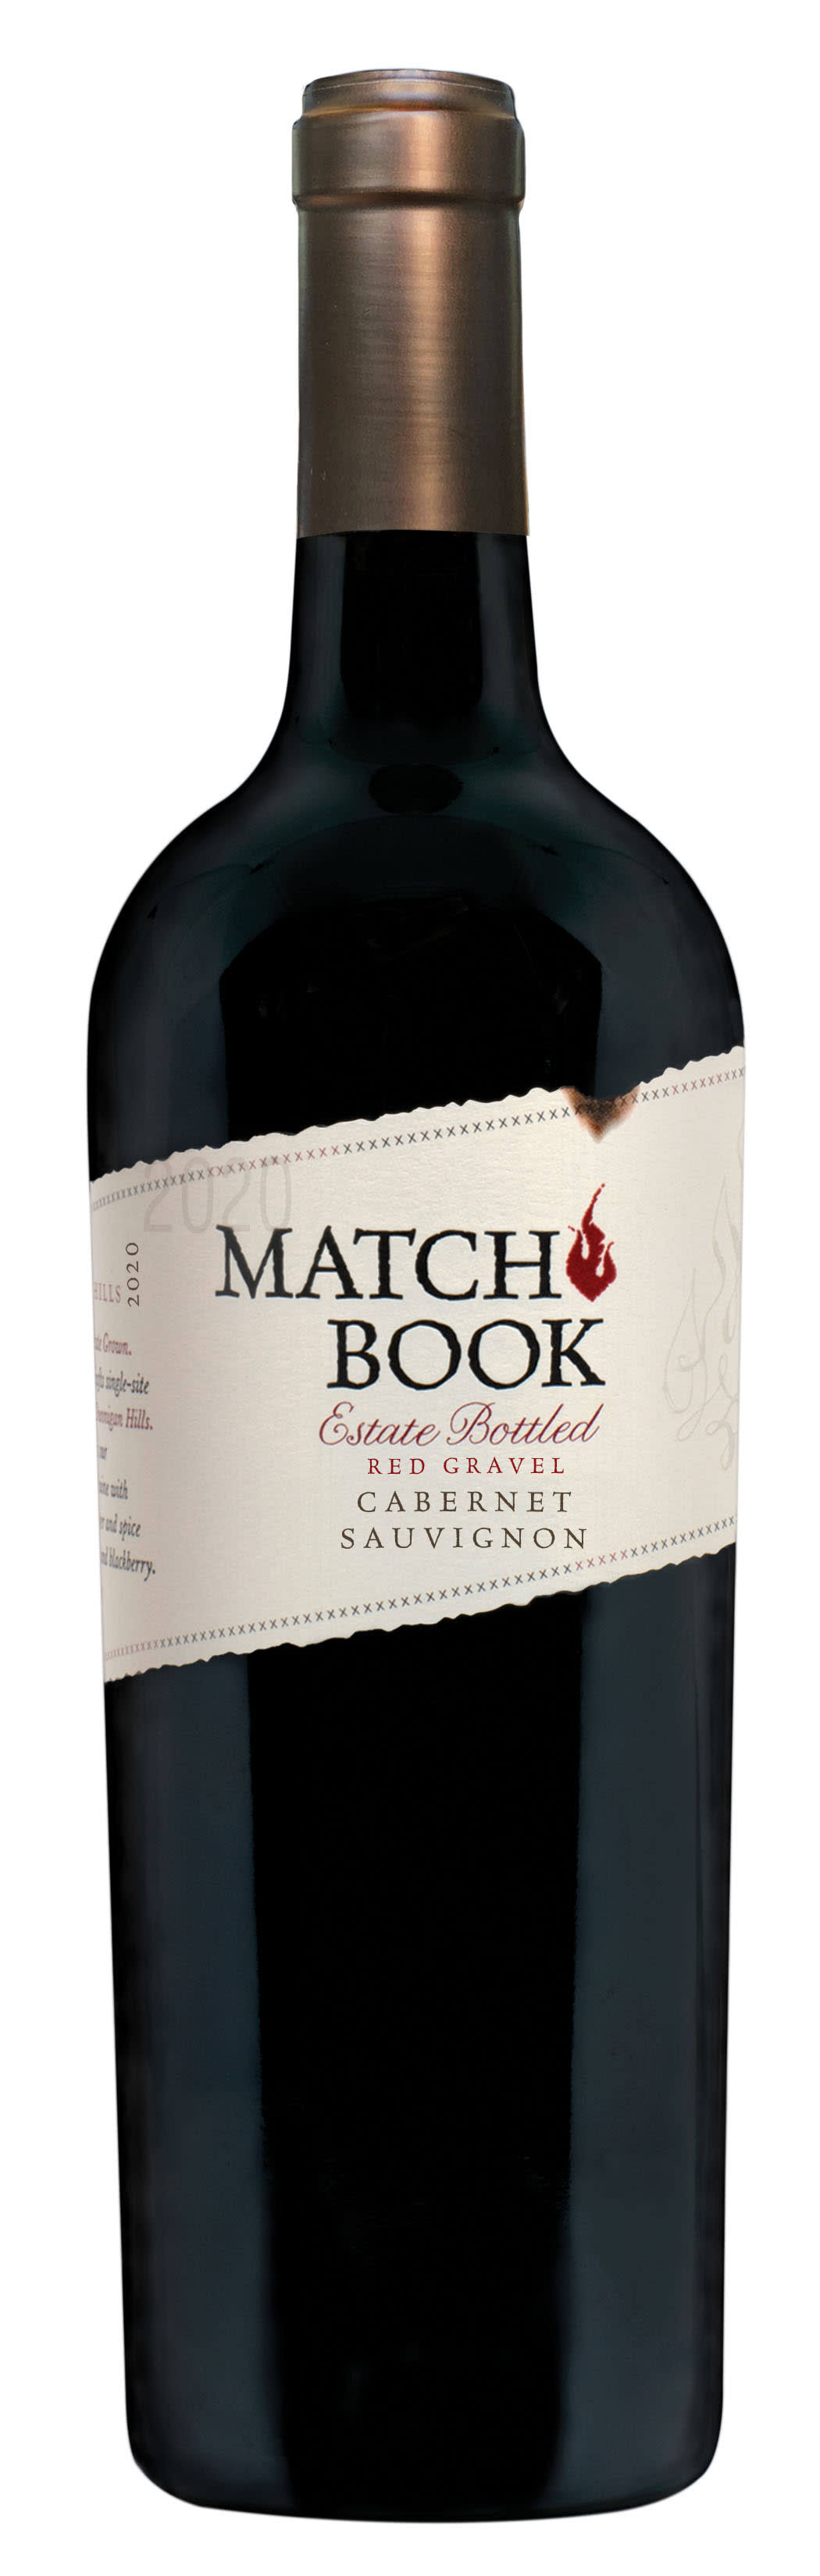 Matchbook Match Book Cabernet Sauvignon, Red Gravel, Dunnigan Hills - 750 ml